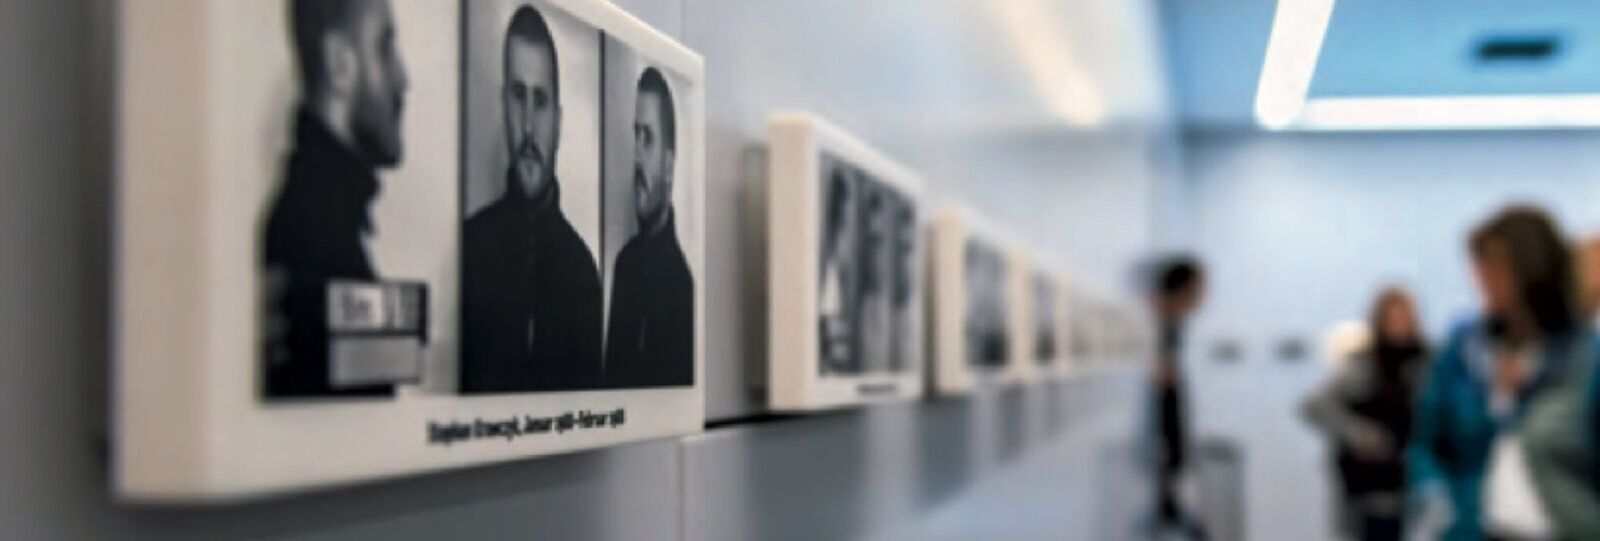 Fotohalle in der Ausstellung "Inhaftiert in Hohenschönhausen"